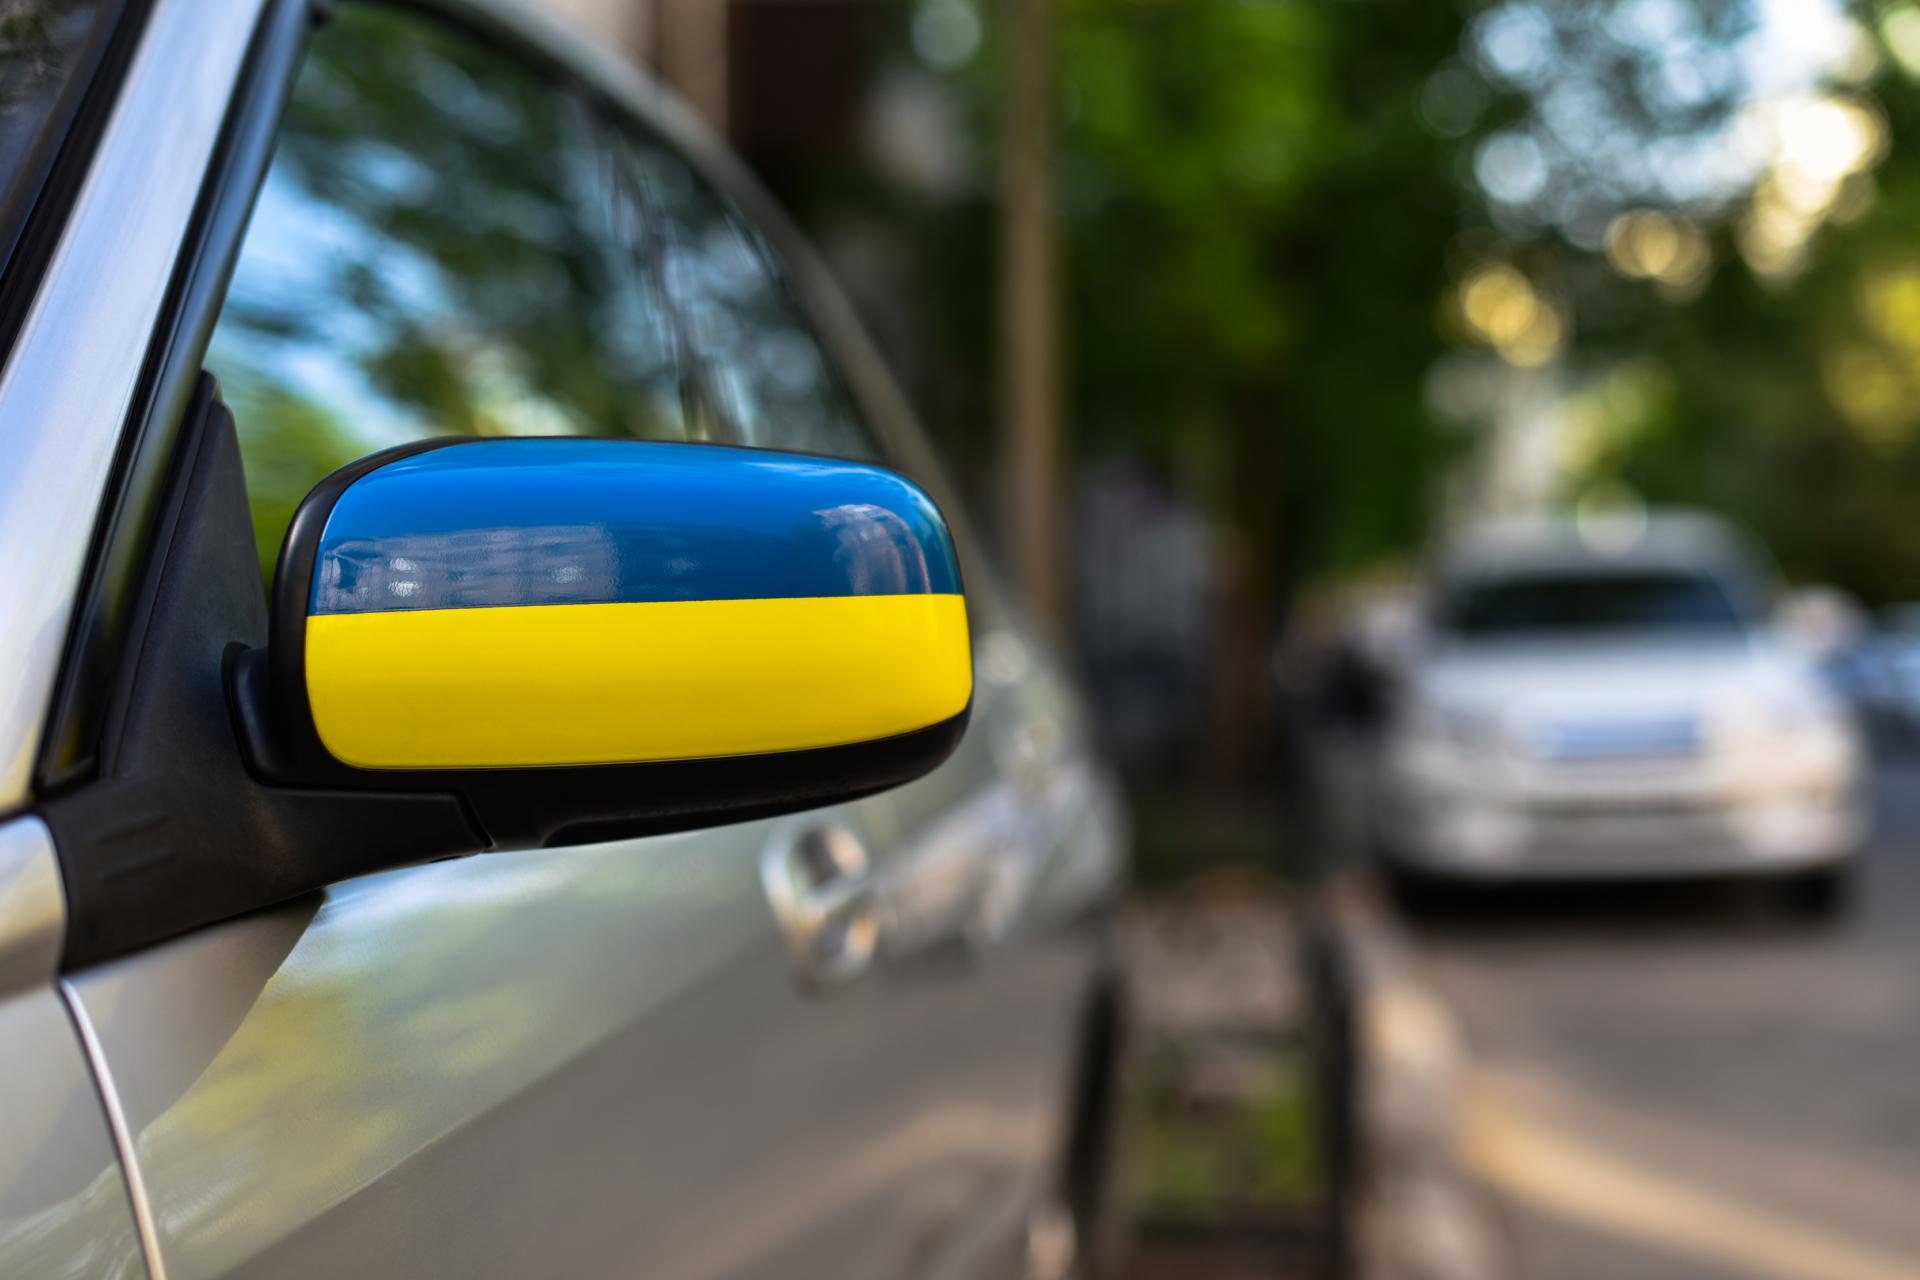 Ukrajinci mohou 6 měsíců jezdit bez povinného ručení